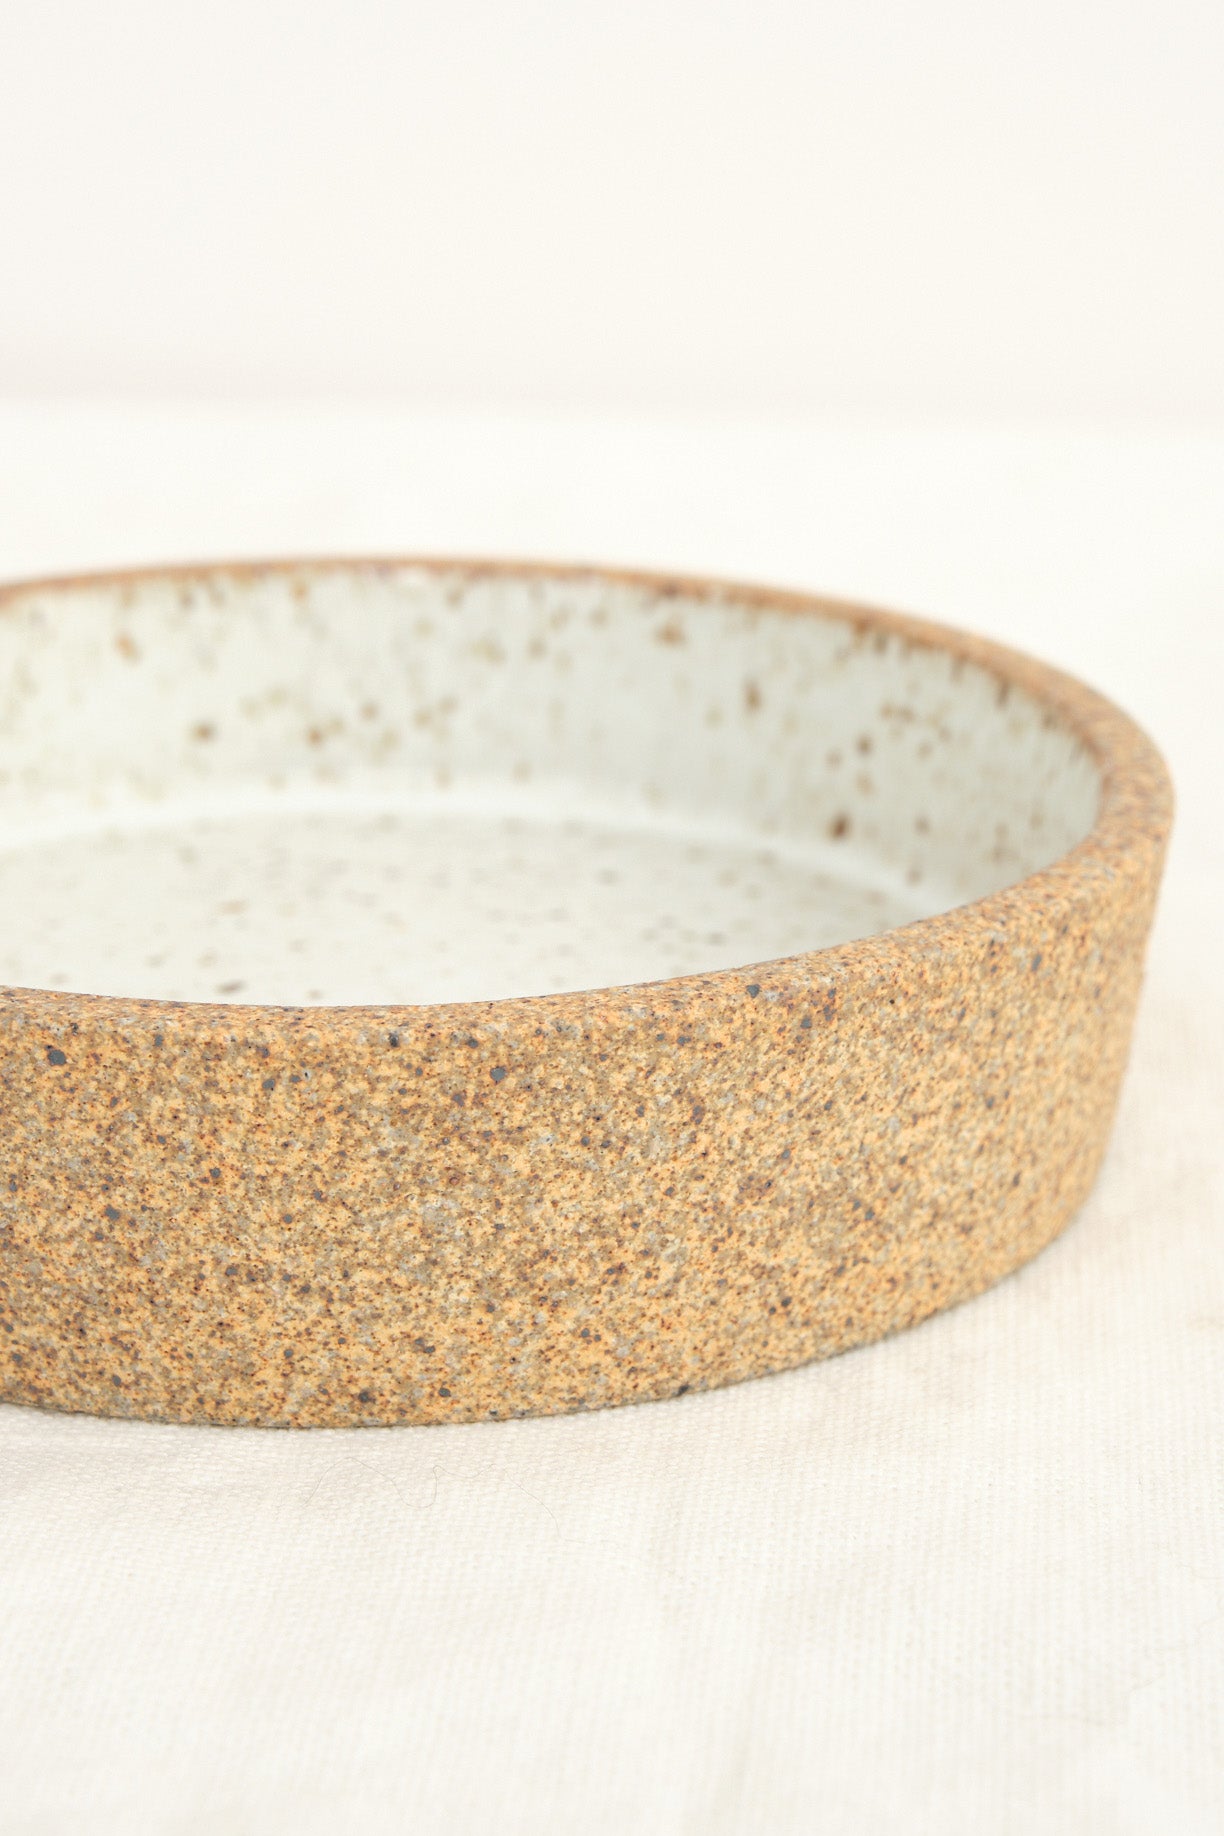 Cazuelita Stoneware bowl